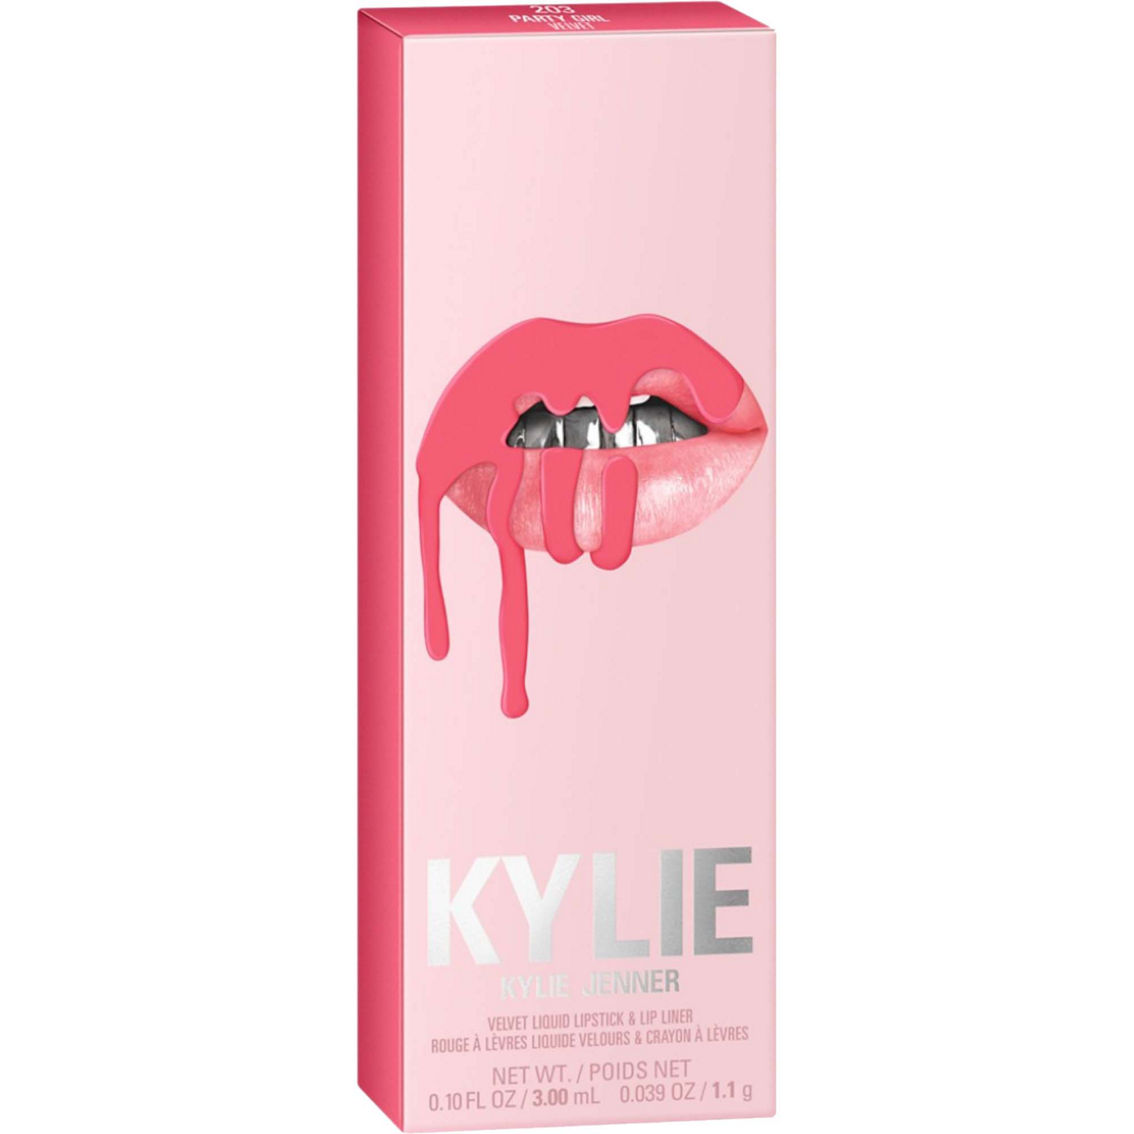 Kylie Cosmetics Velvet Lip Kit - Image 4 of 4